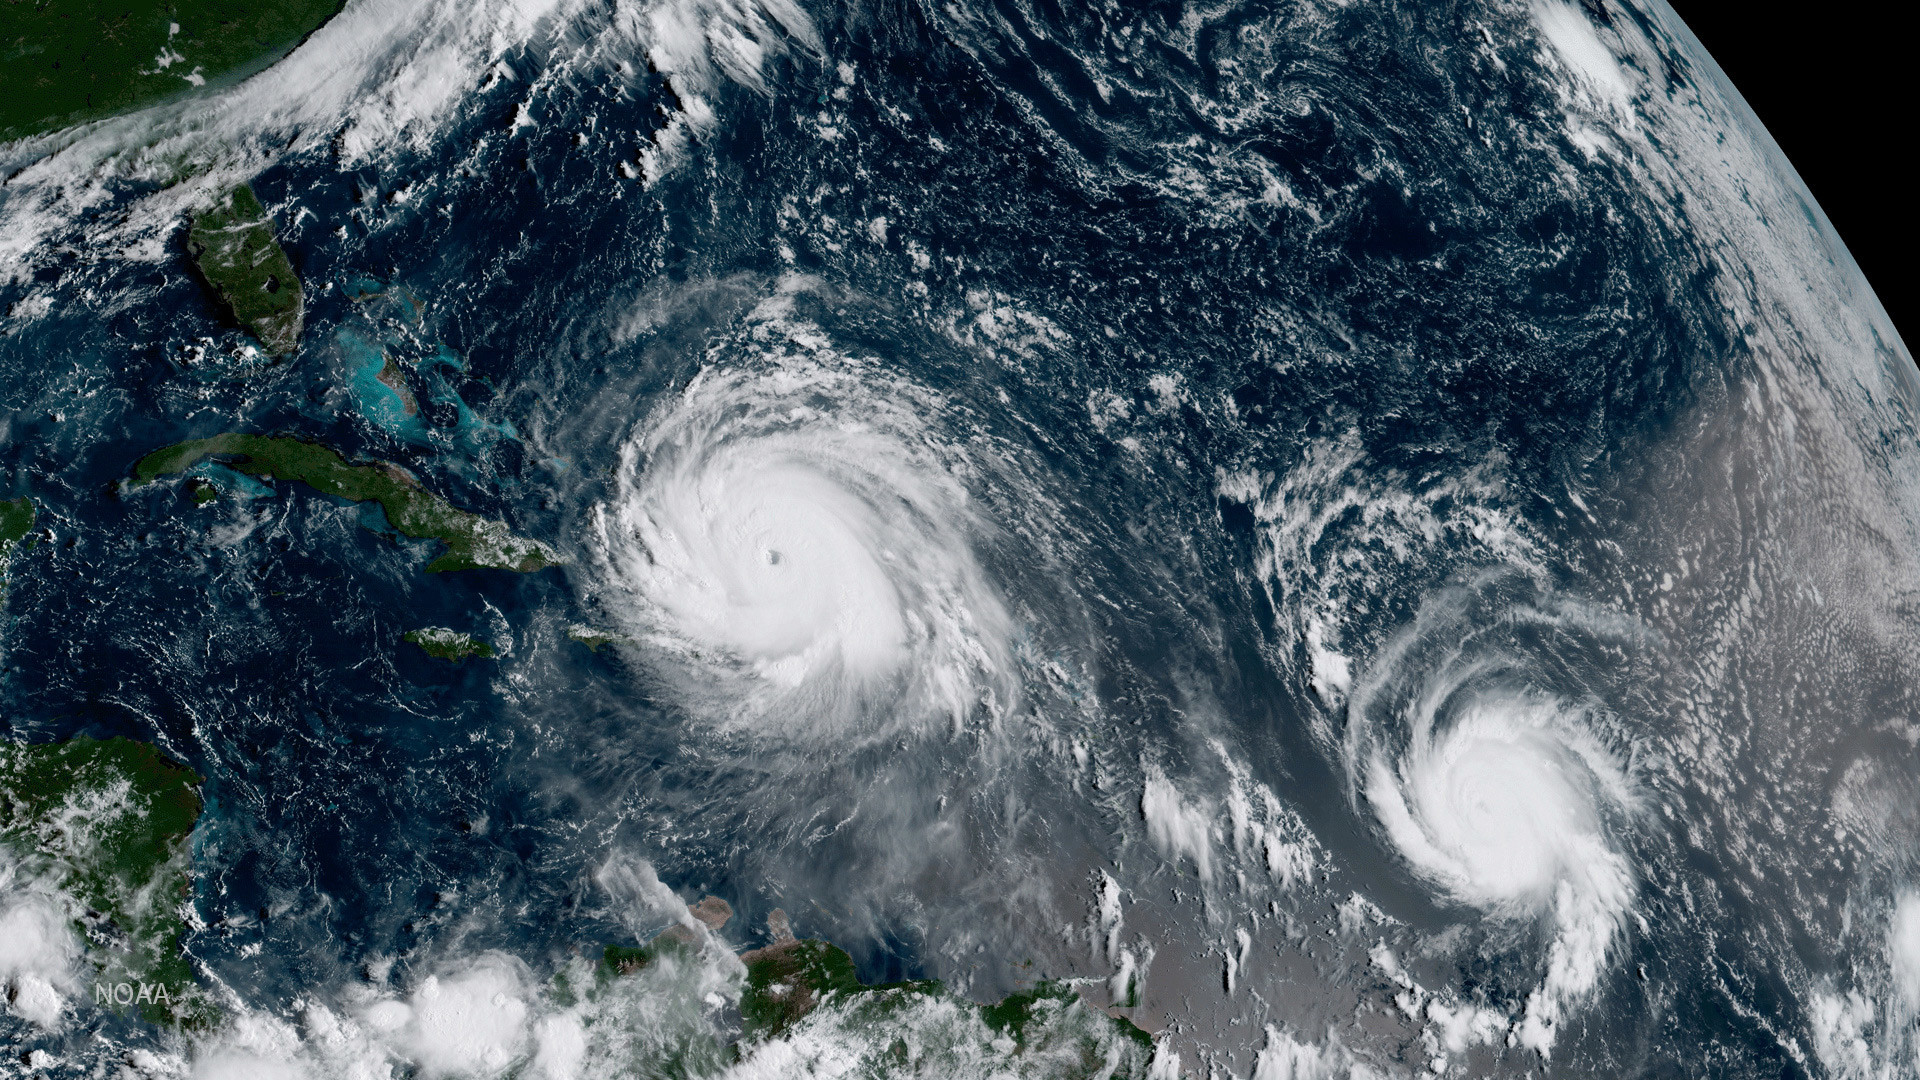 Furacões Irma (esq.) e Jose retratados no Oceano Atlântico, em 7 de setembro de 2017